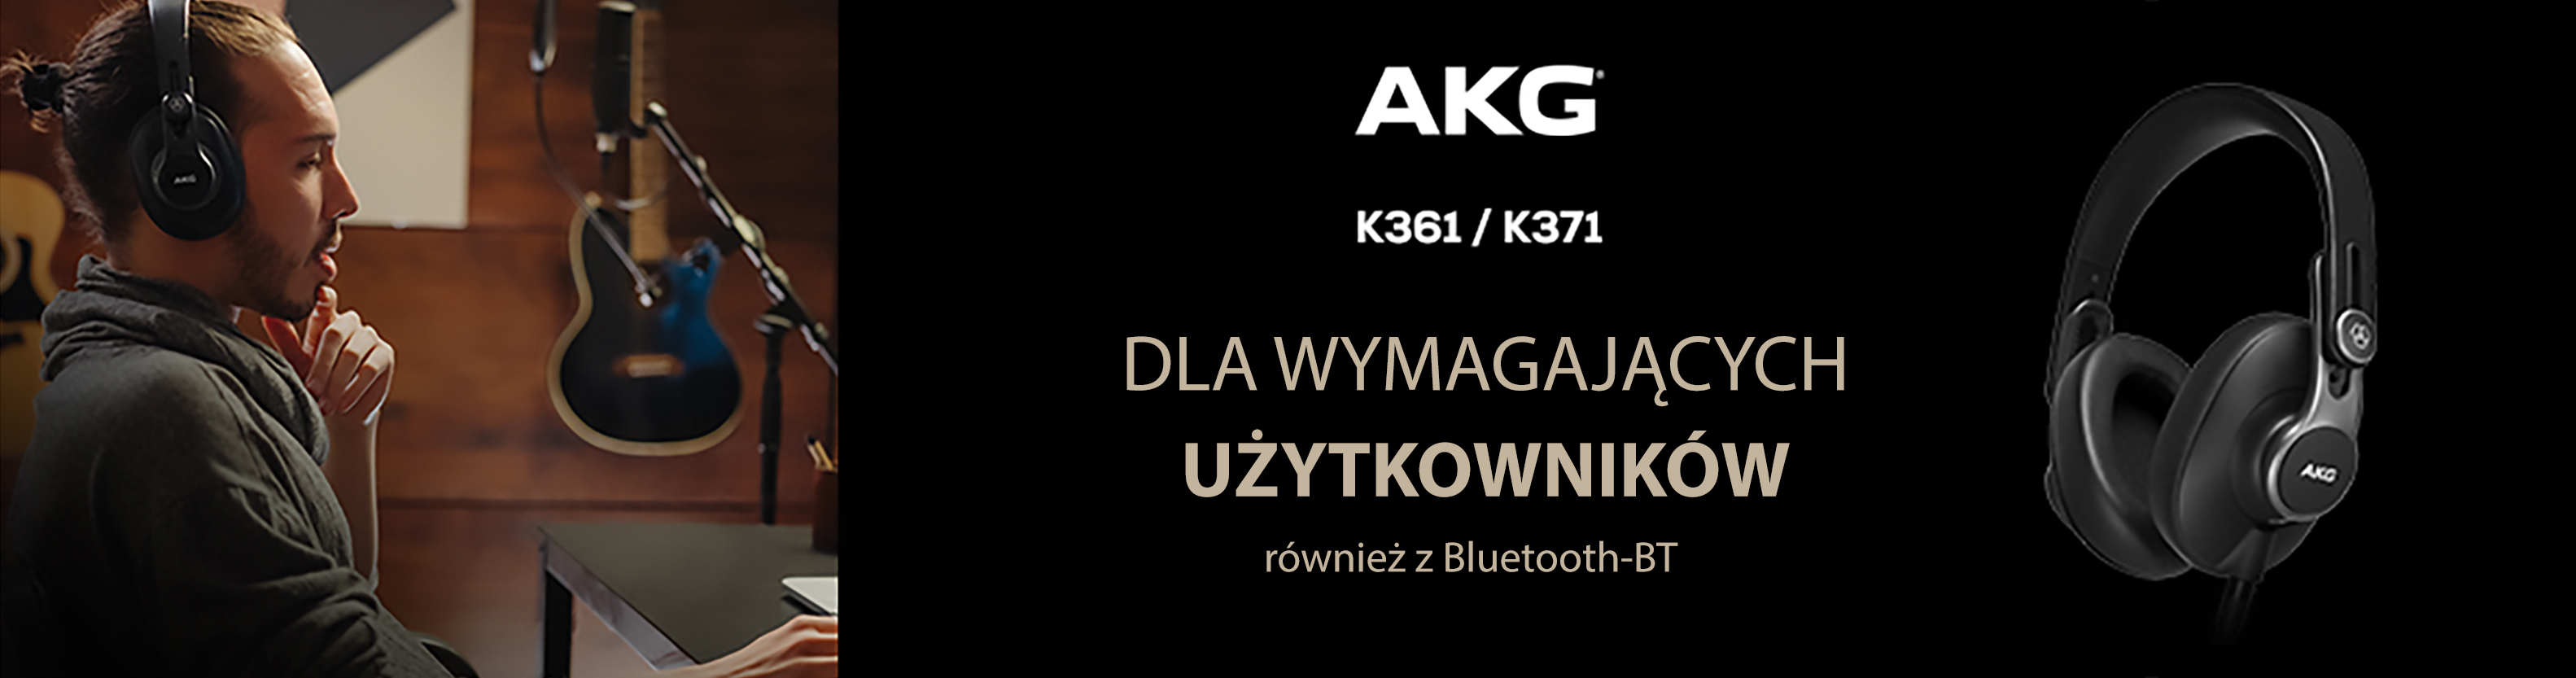 AKG K361 i K371